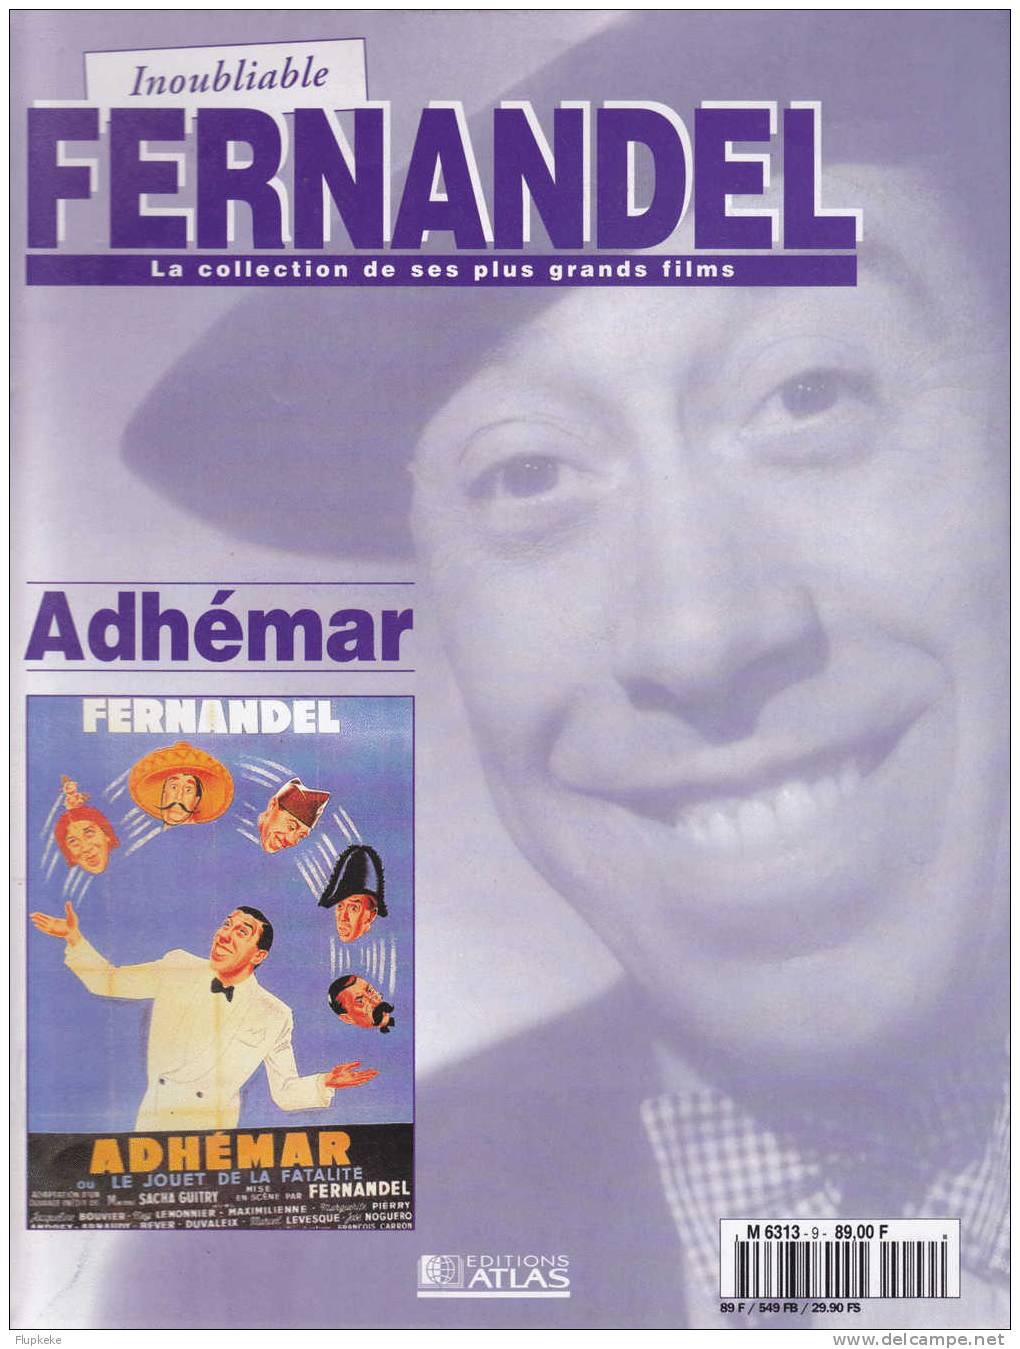 Inoubliable Fernandel 9 Adhémar - Télévision